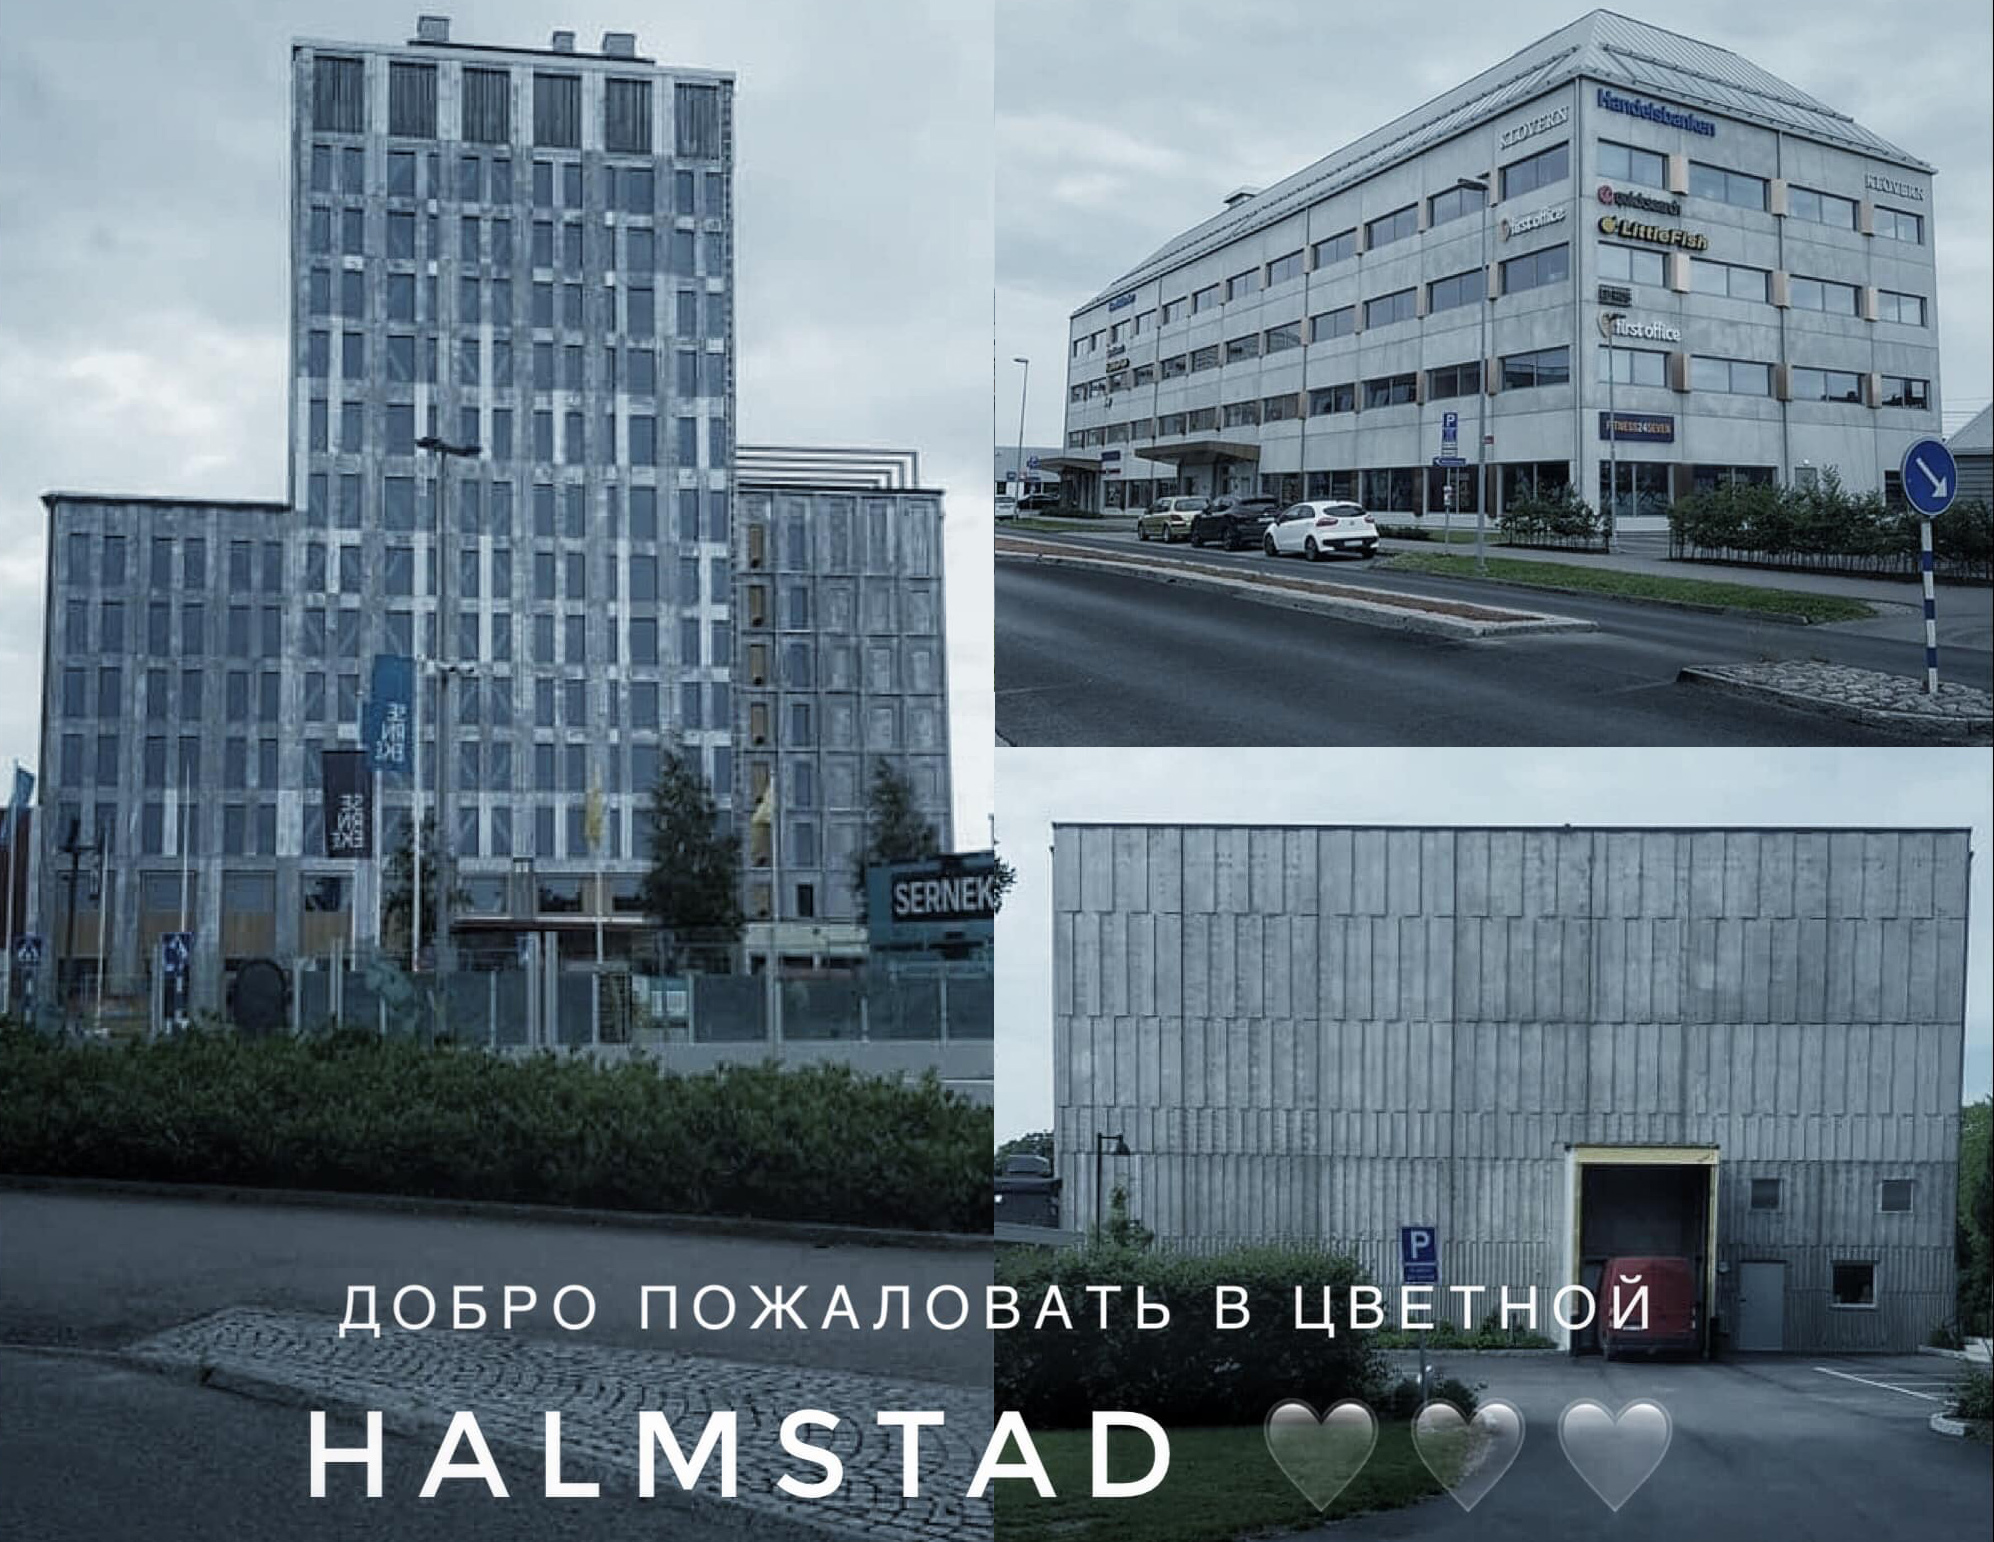 Vykort från Sovjet enligt lokalinvånarna. Ni ser Hotell Stasi, konsthallens tillbyggnad samt vinnaren av Kasper Kalkon-priset 2017